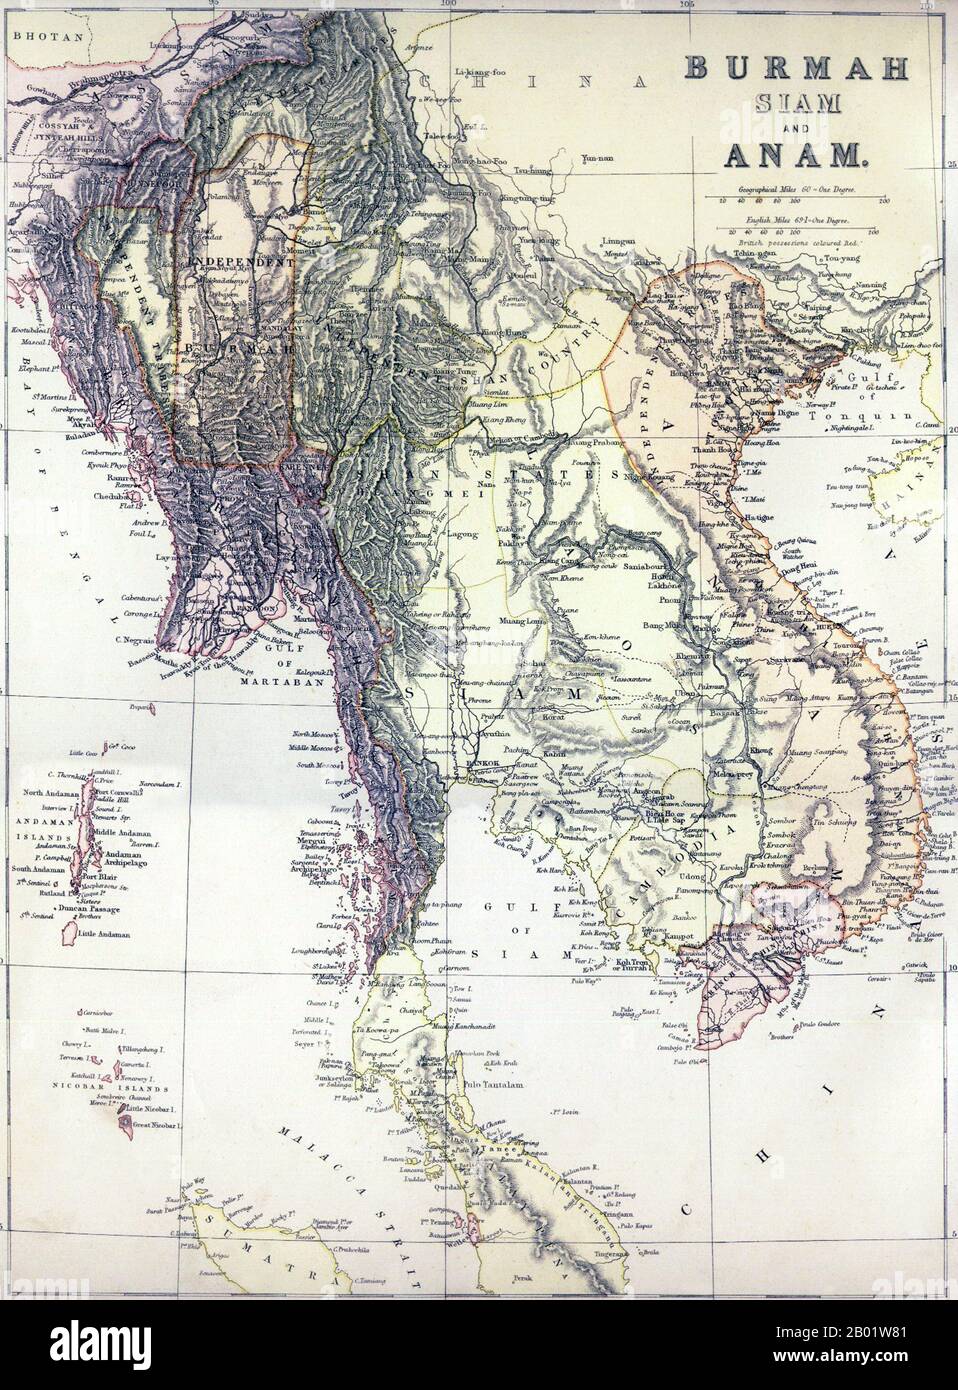 Una mappa Politica del sud-est asiatico continentale, tra cui Birmania, Thailandia, Laos, Cambogia e Vietnam, così come la Malesia peninsulare, le Andamane e Nicobare, e parte di Sumatra. Pubblicato, a quanto pare, poco prima della 3rd guerra anglo-birmana (1885-86) che estinguerebbe l'indipendenza birmana, mostra 'Birmania indipendente' in un rettangolo approssimativo intorno a Mandalay. Ad est si trova il "Paese indipendente dello Shan" che comprende gli Stati birmani dello Shan e il Laos settentrionale. Ad est di questo è ancora Tonkin, o Vietnam del nord, dove le 'Tribù indipendenti' rappresentano il Tai do semi-indipendente Foto Stock